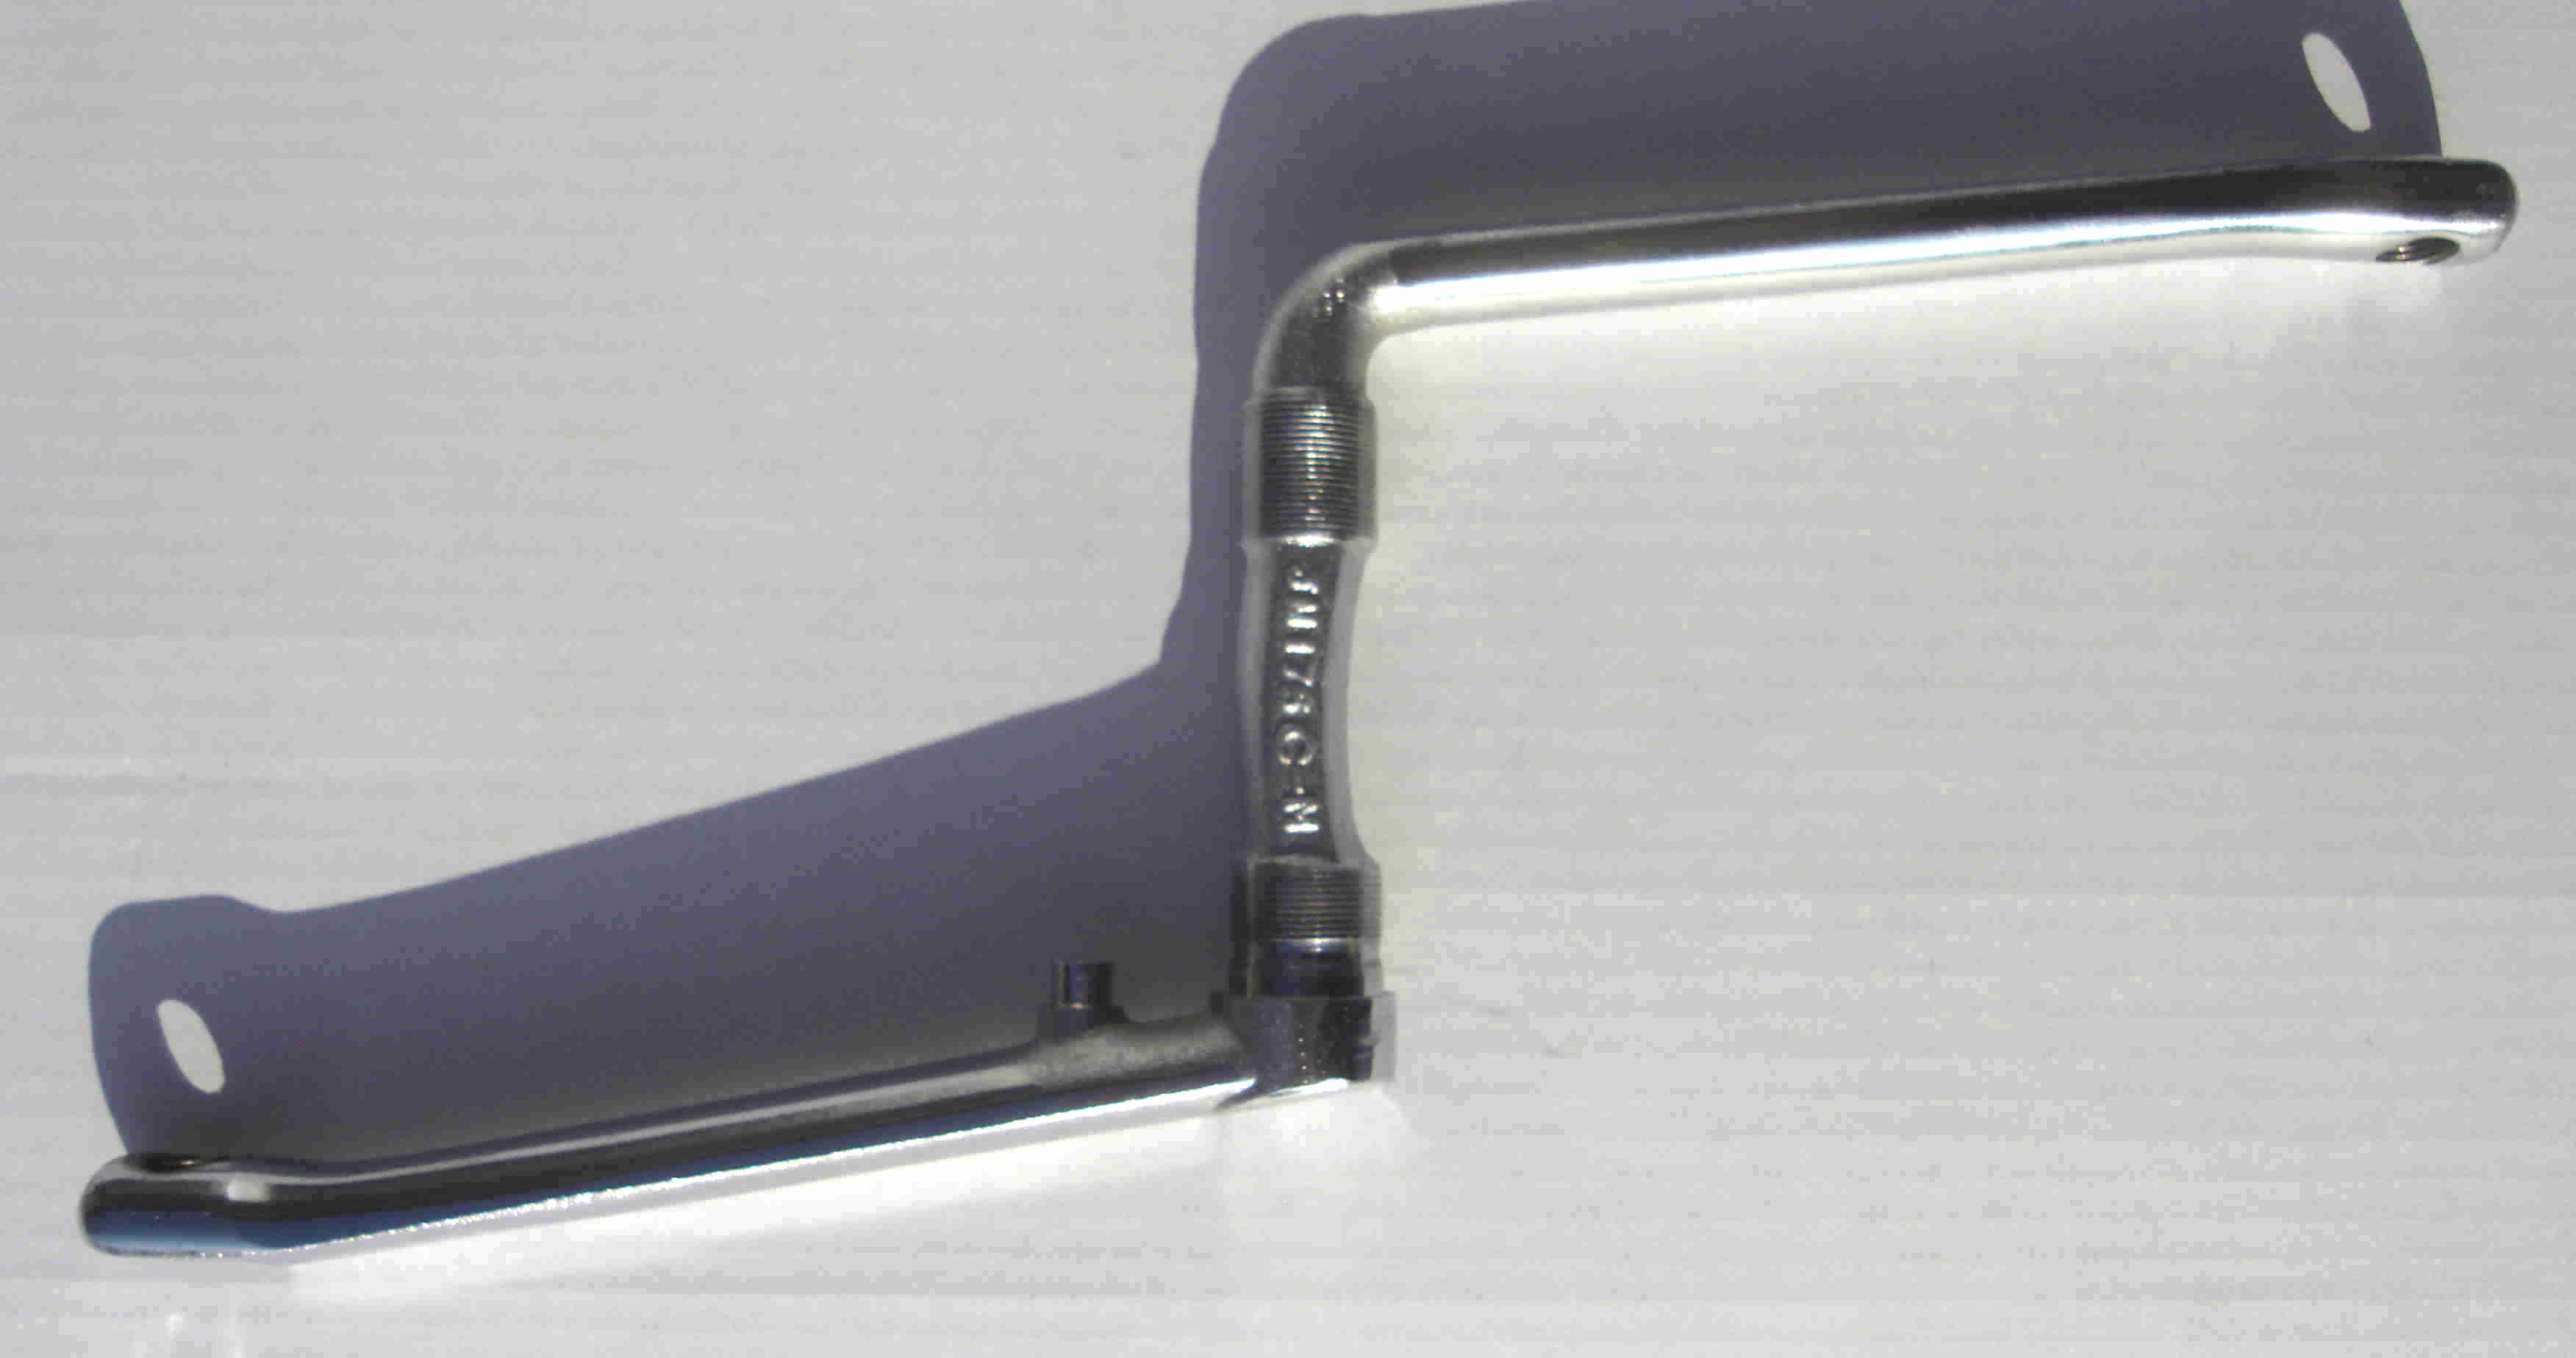 One piece Crank, Kuno Kante 175 mm verchromt Kurbelgarnitur aus einem Stück